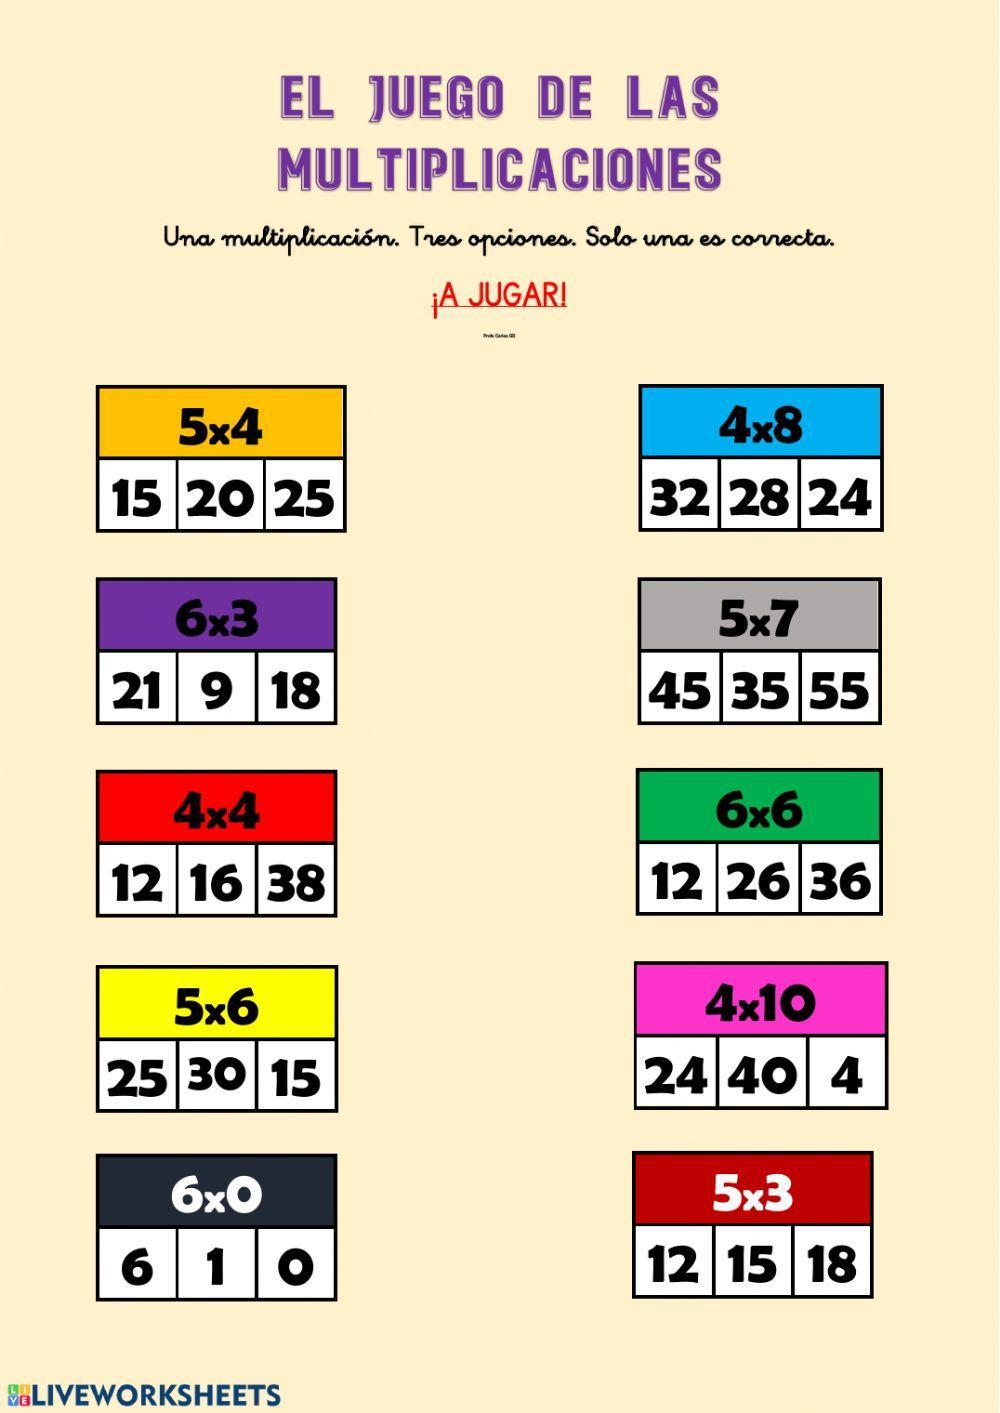 El juego de las multiplicaciones (4,5,6)